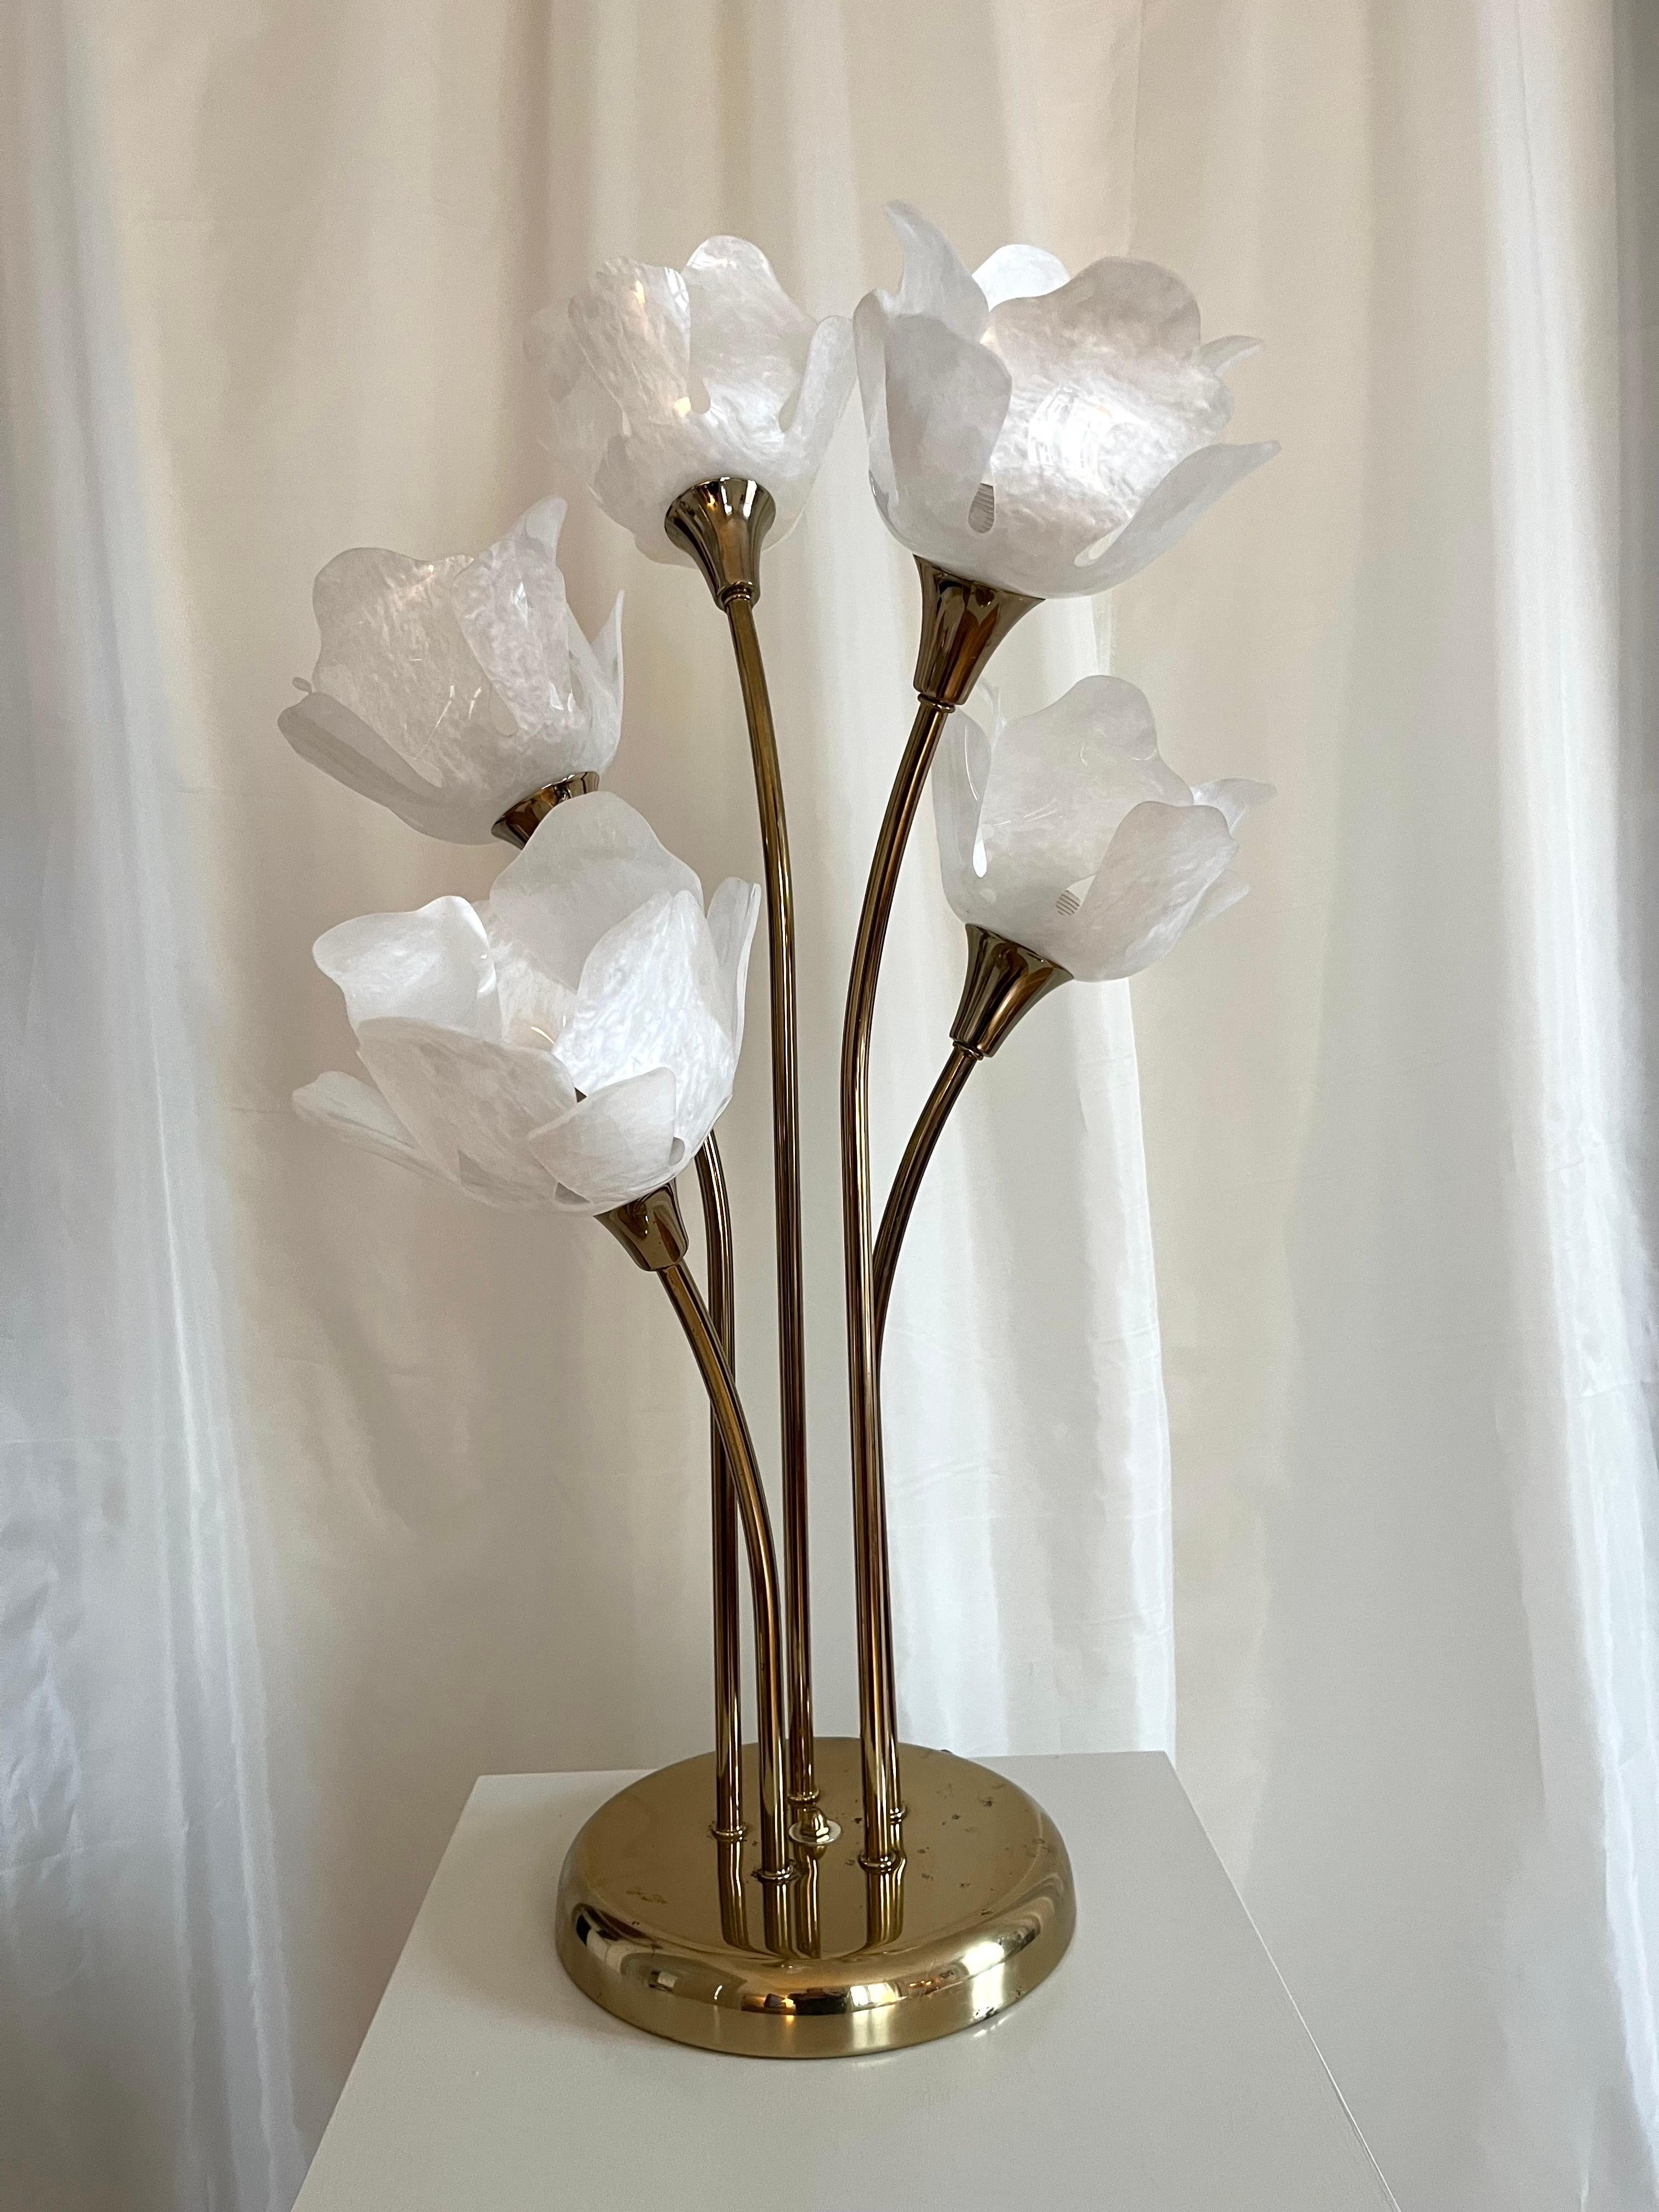 Lampe de bureau suédoise vintage en laiton avec abat-jour en forme de fleur ressemblant à des perles

Lampe de table vintage suédoise en laiton, ornée d'abat-jours en plastique perlé en forme de fleur. Avec ses cinq bras et ses abat-jours, cette